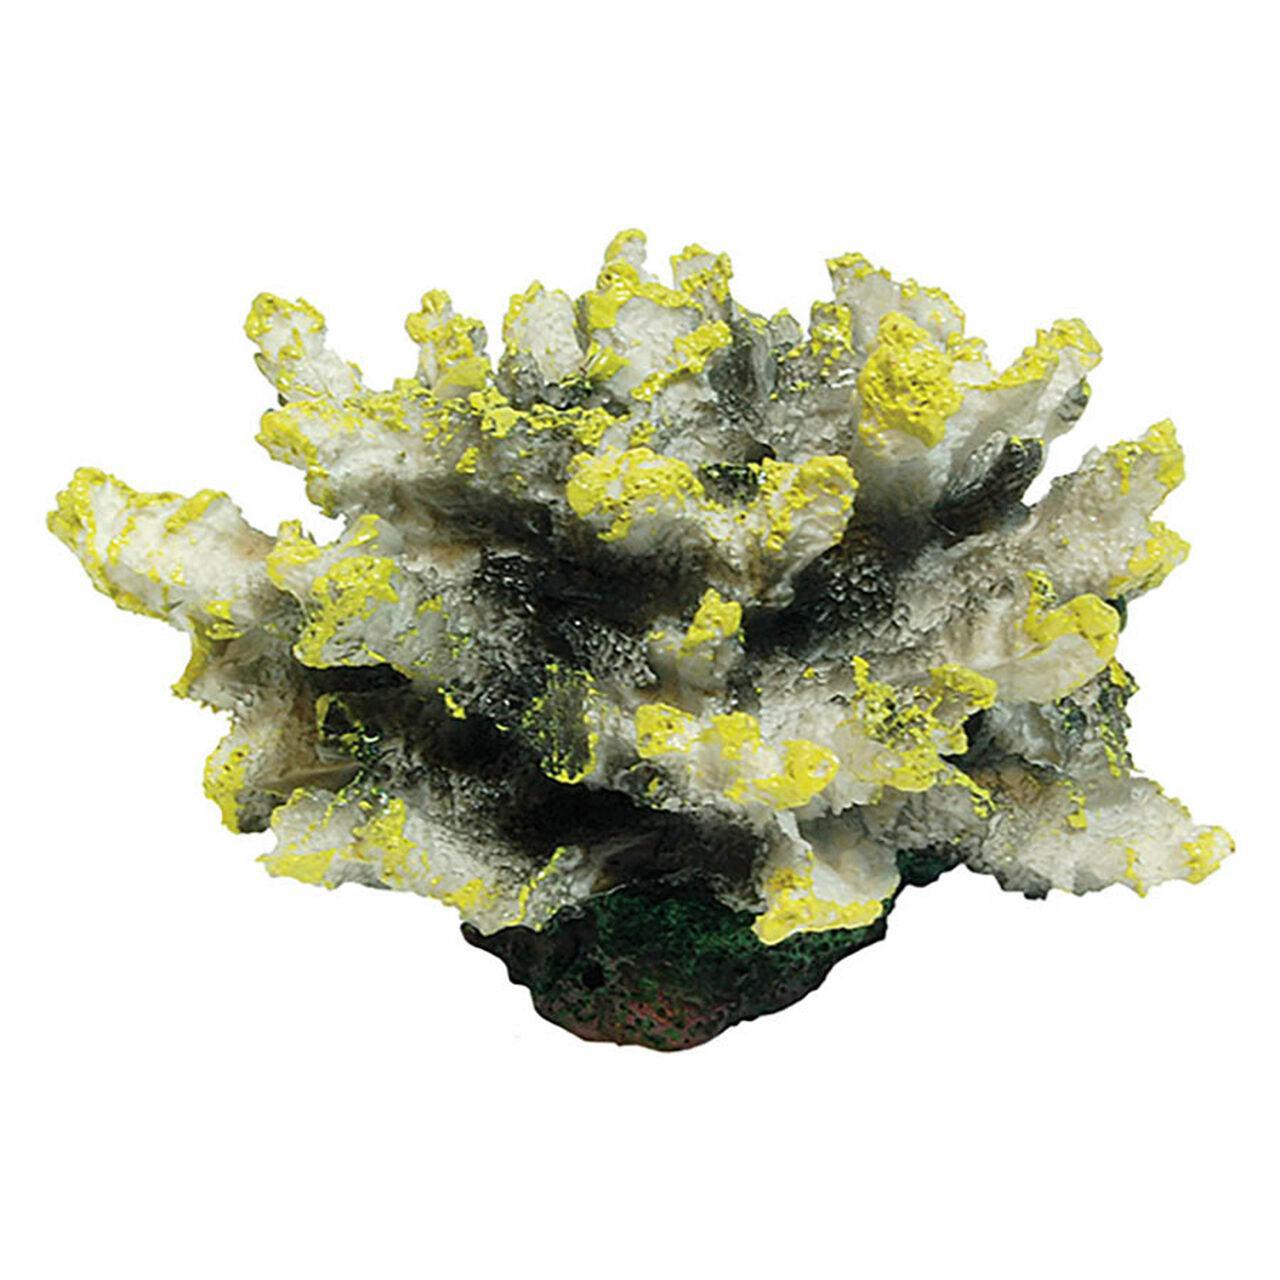 AquaSpectra Coral